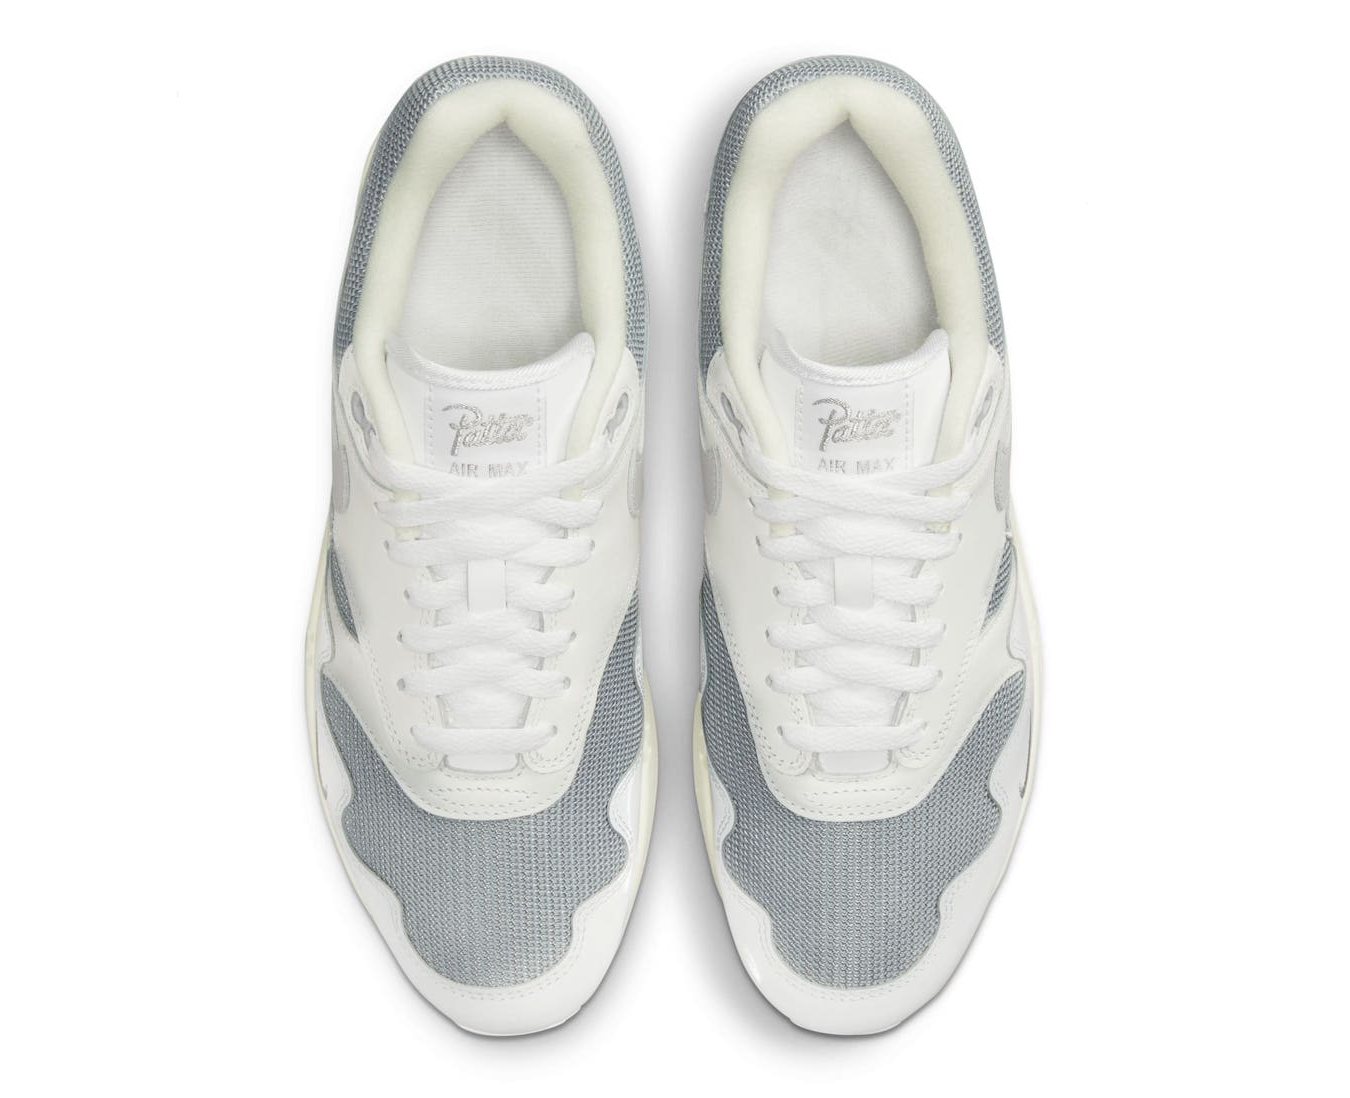 Nike Air Max 1 Patta Waves 'White Silver'